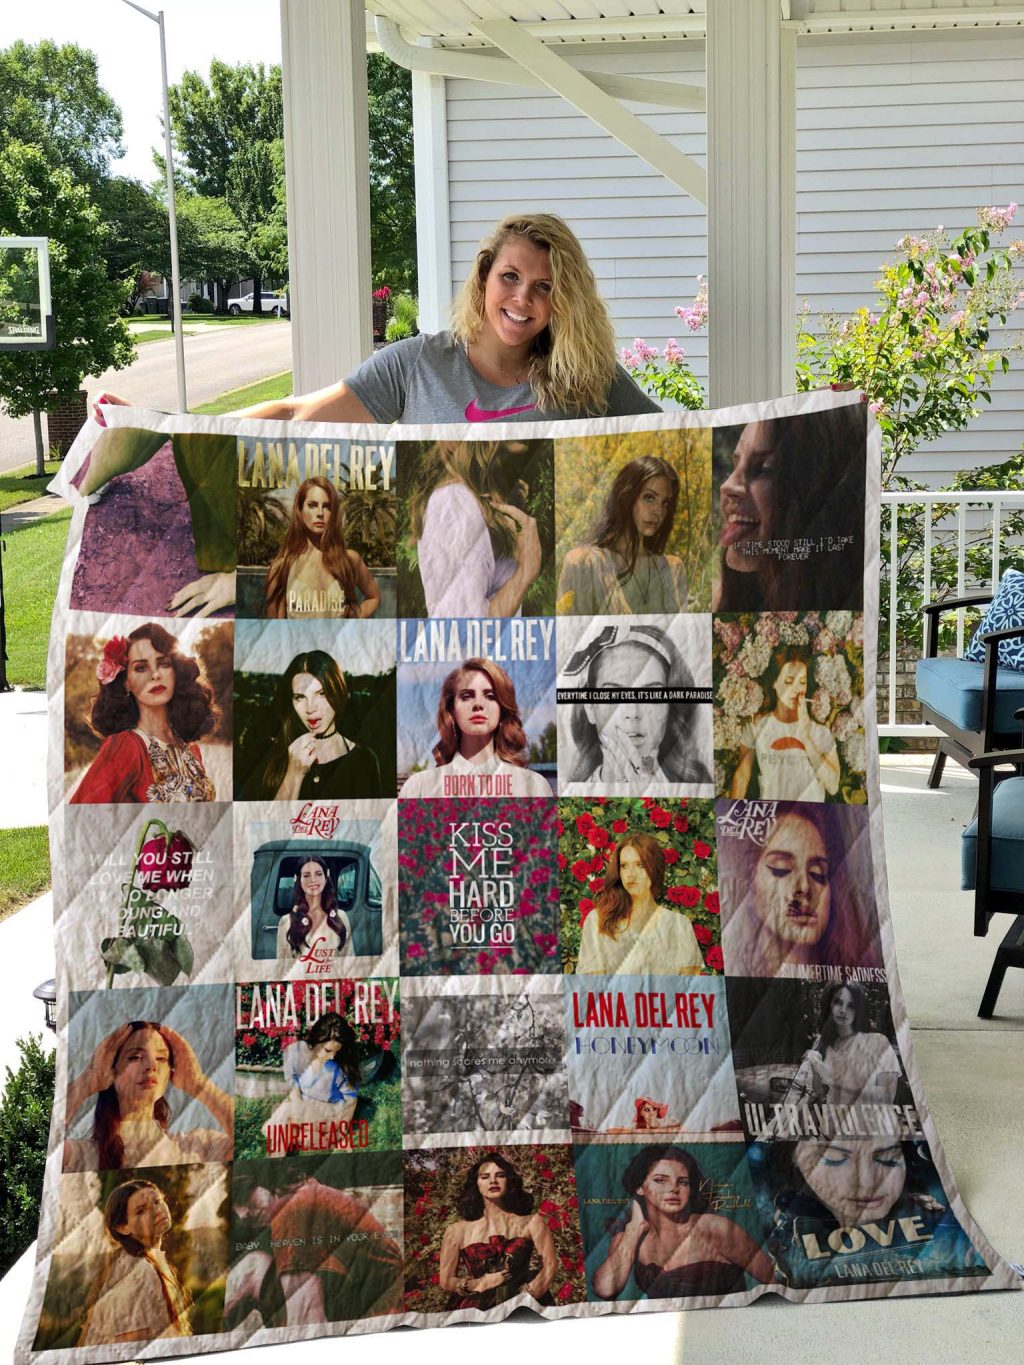 1589992004 lana del rey albums quilt blanket for fans mockup - Lana Del Rey Merch